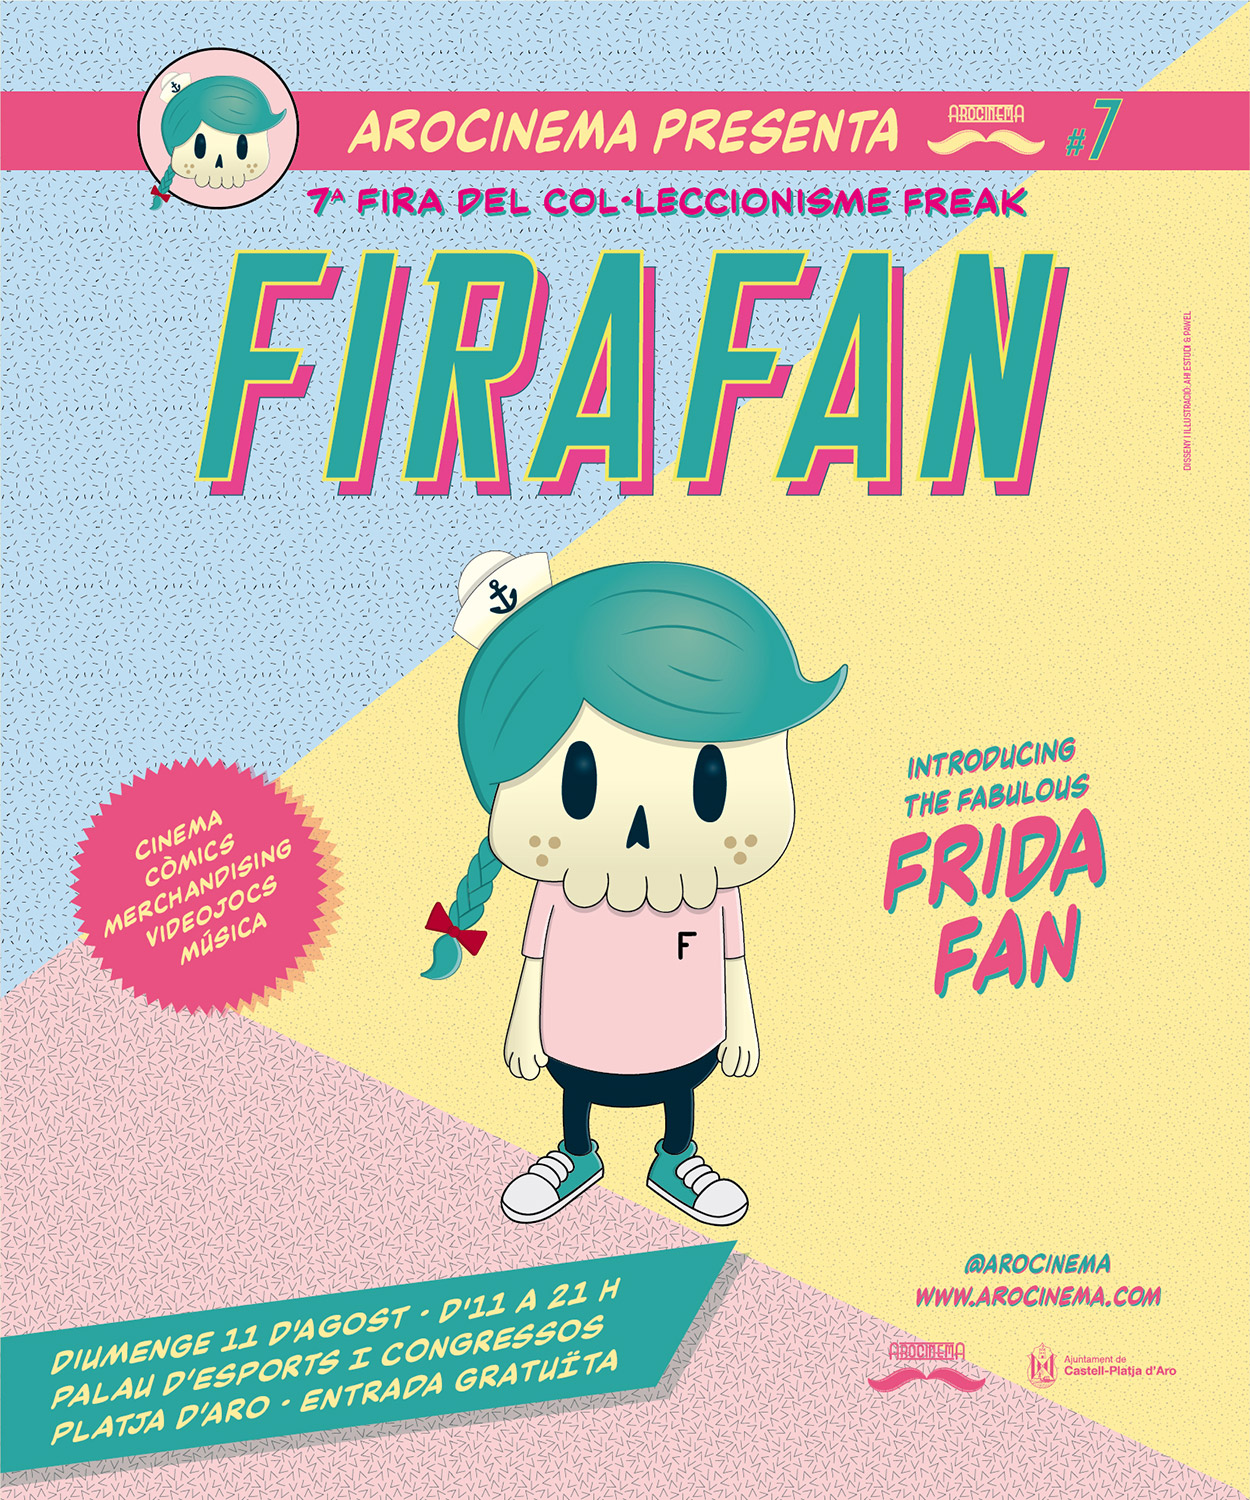 FiraFan 2019 · 7a fira del col·leccionisme freak